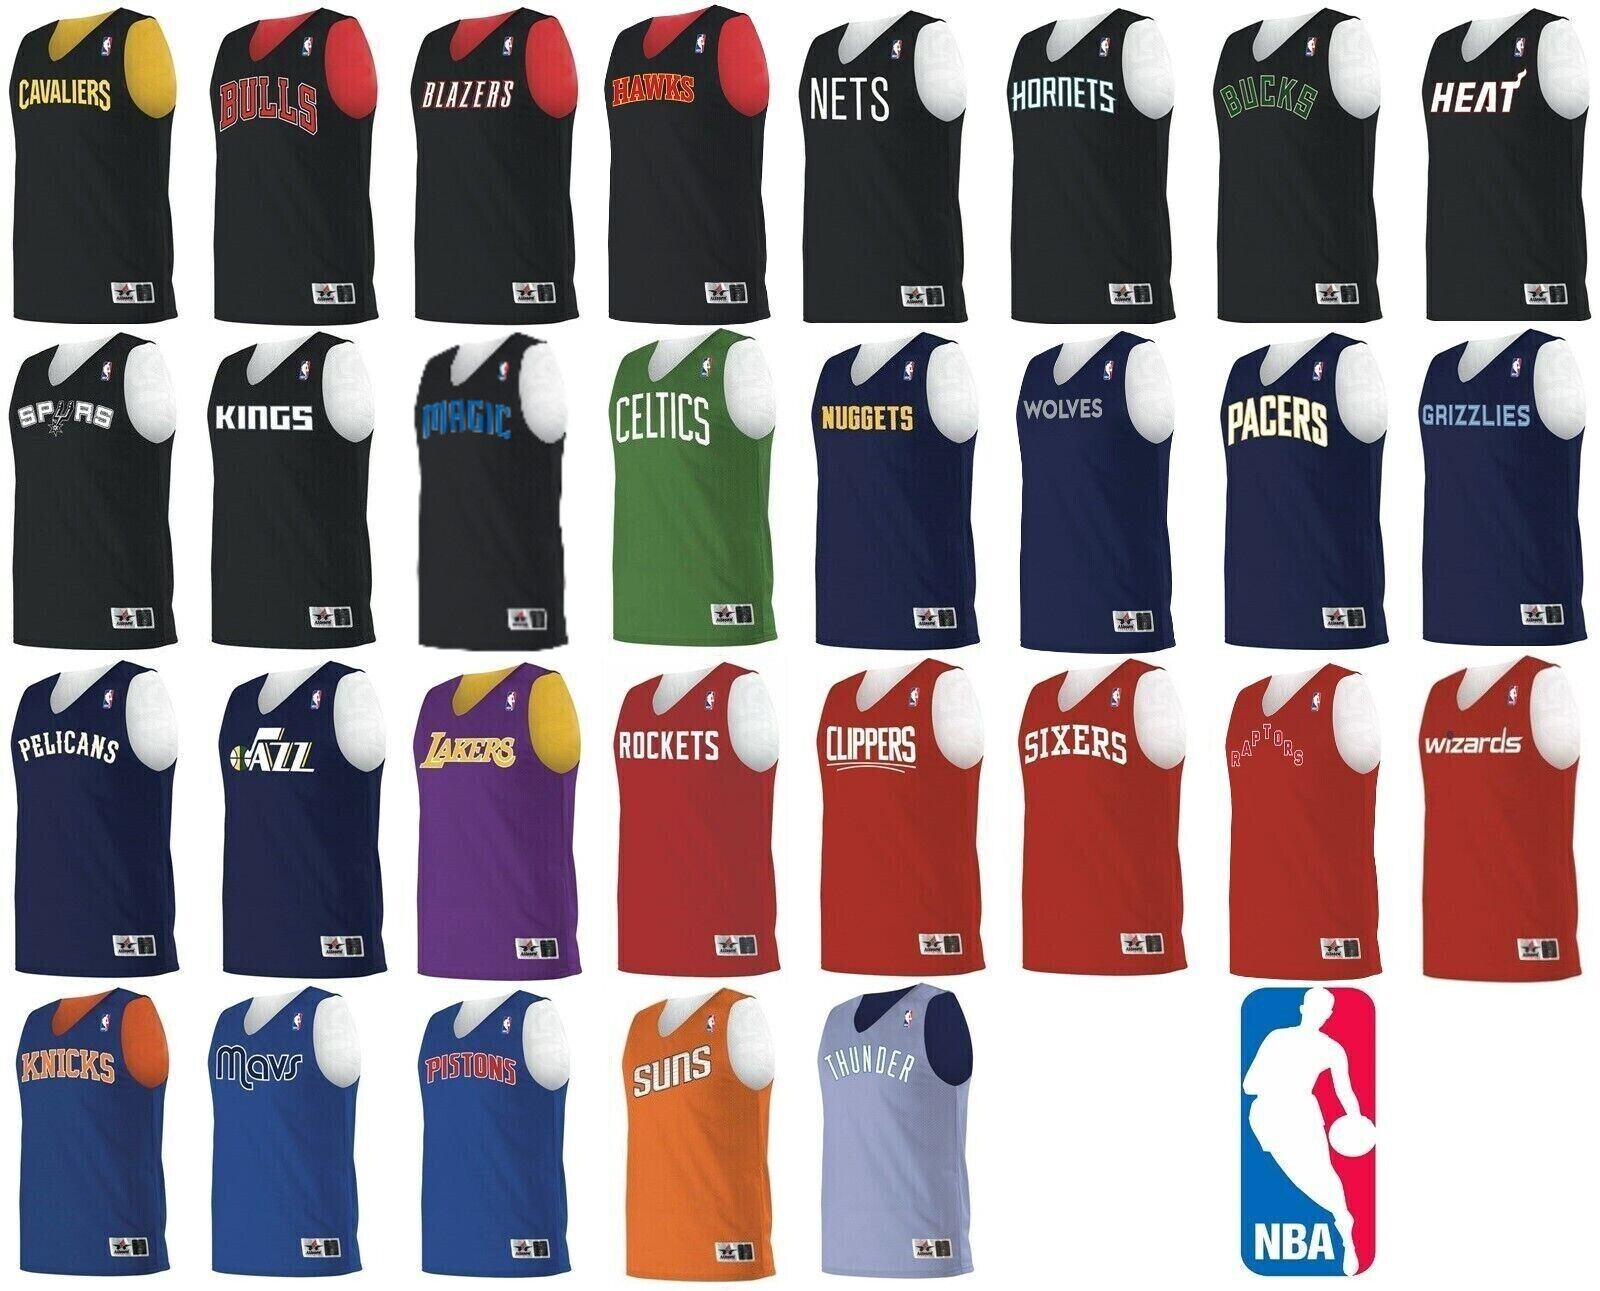 Nike NBA jersey sizes - Youth XL vs Adult M : r/basketballjerseys